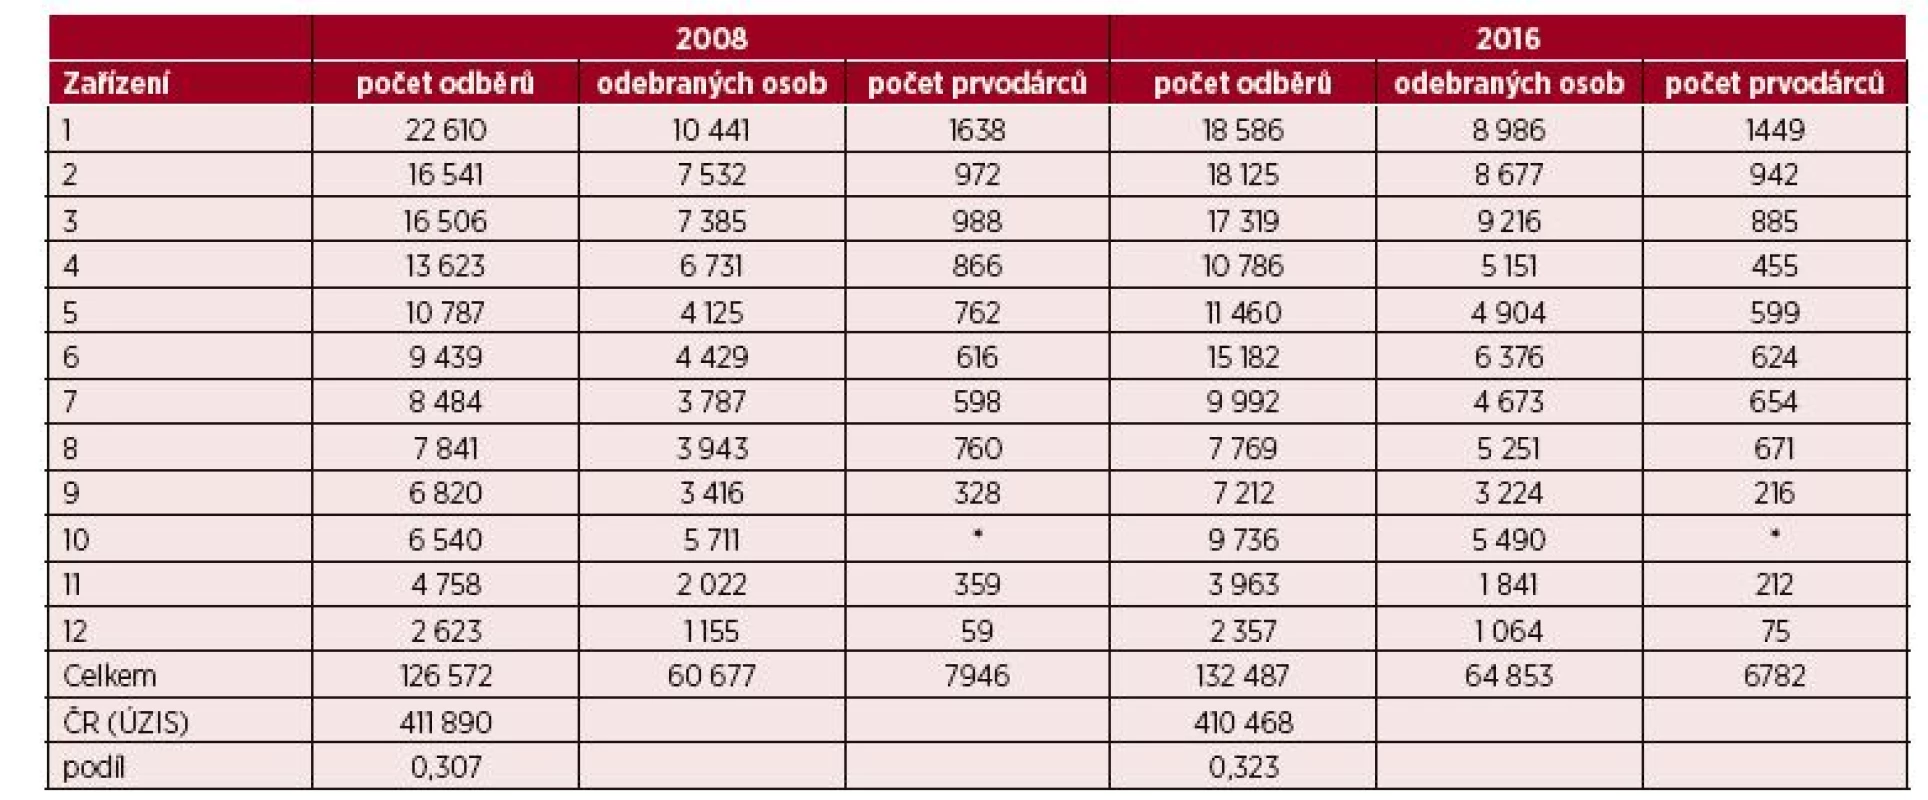 Základní údaje o činnosti jednotlivých ZTS zapojených do studie – srovnání 2008/2016